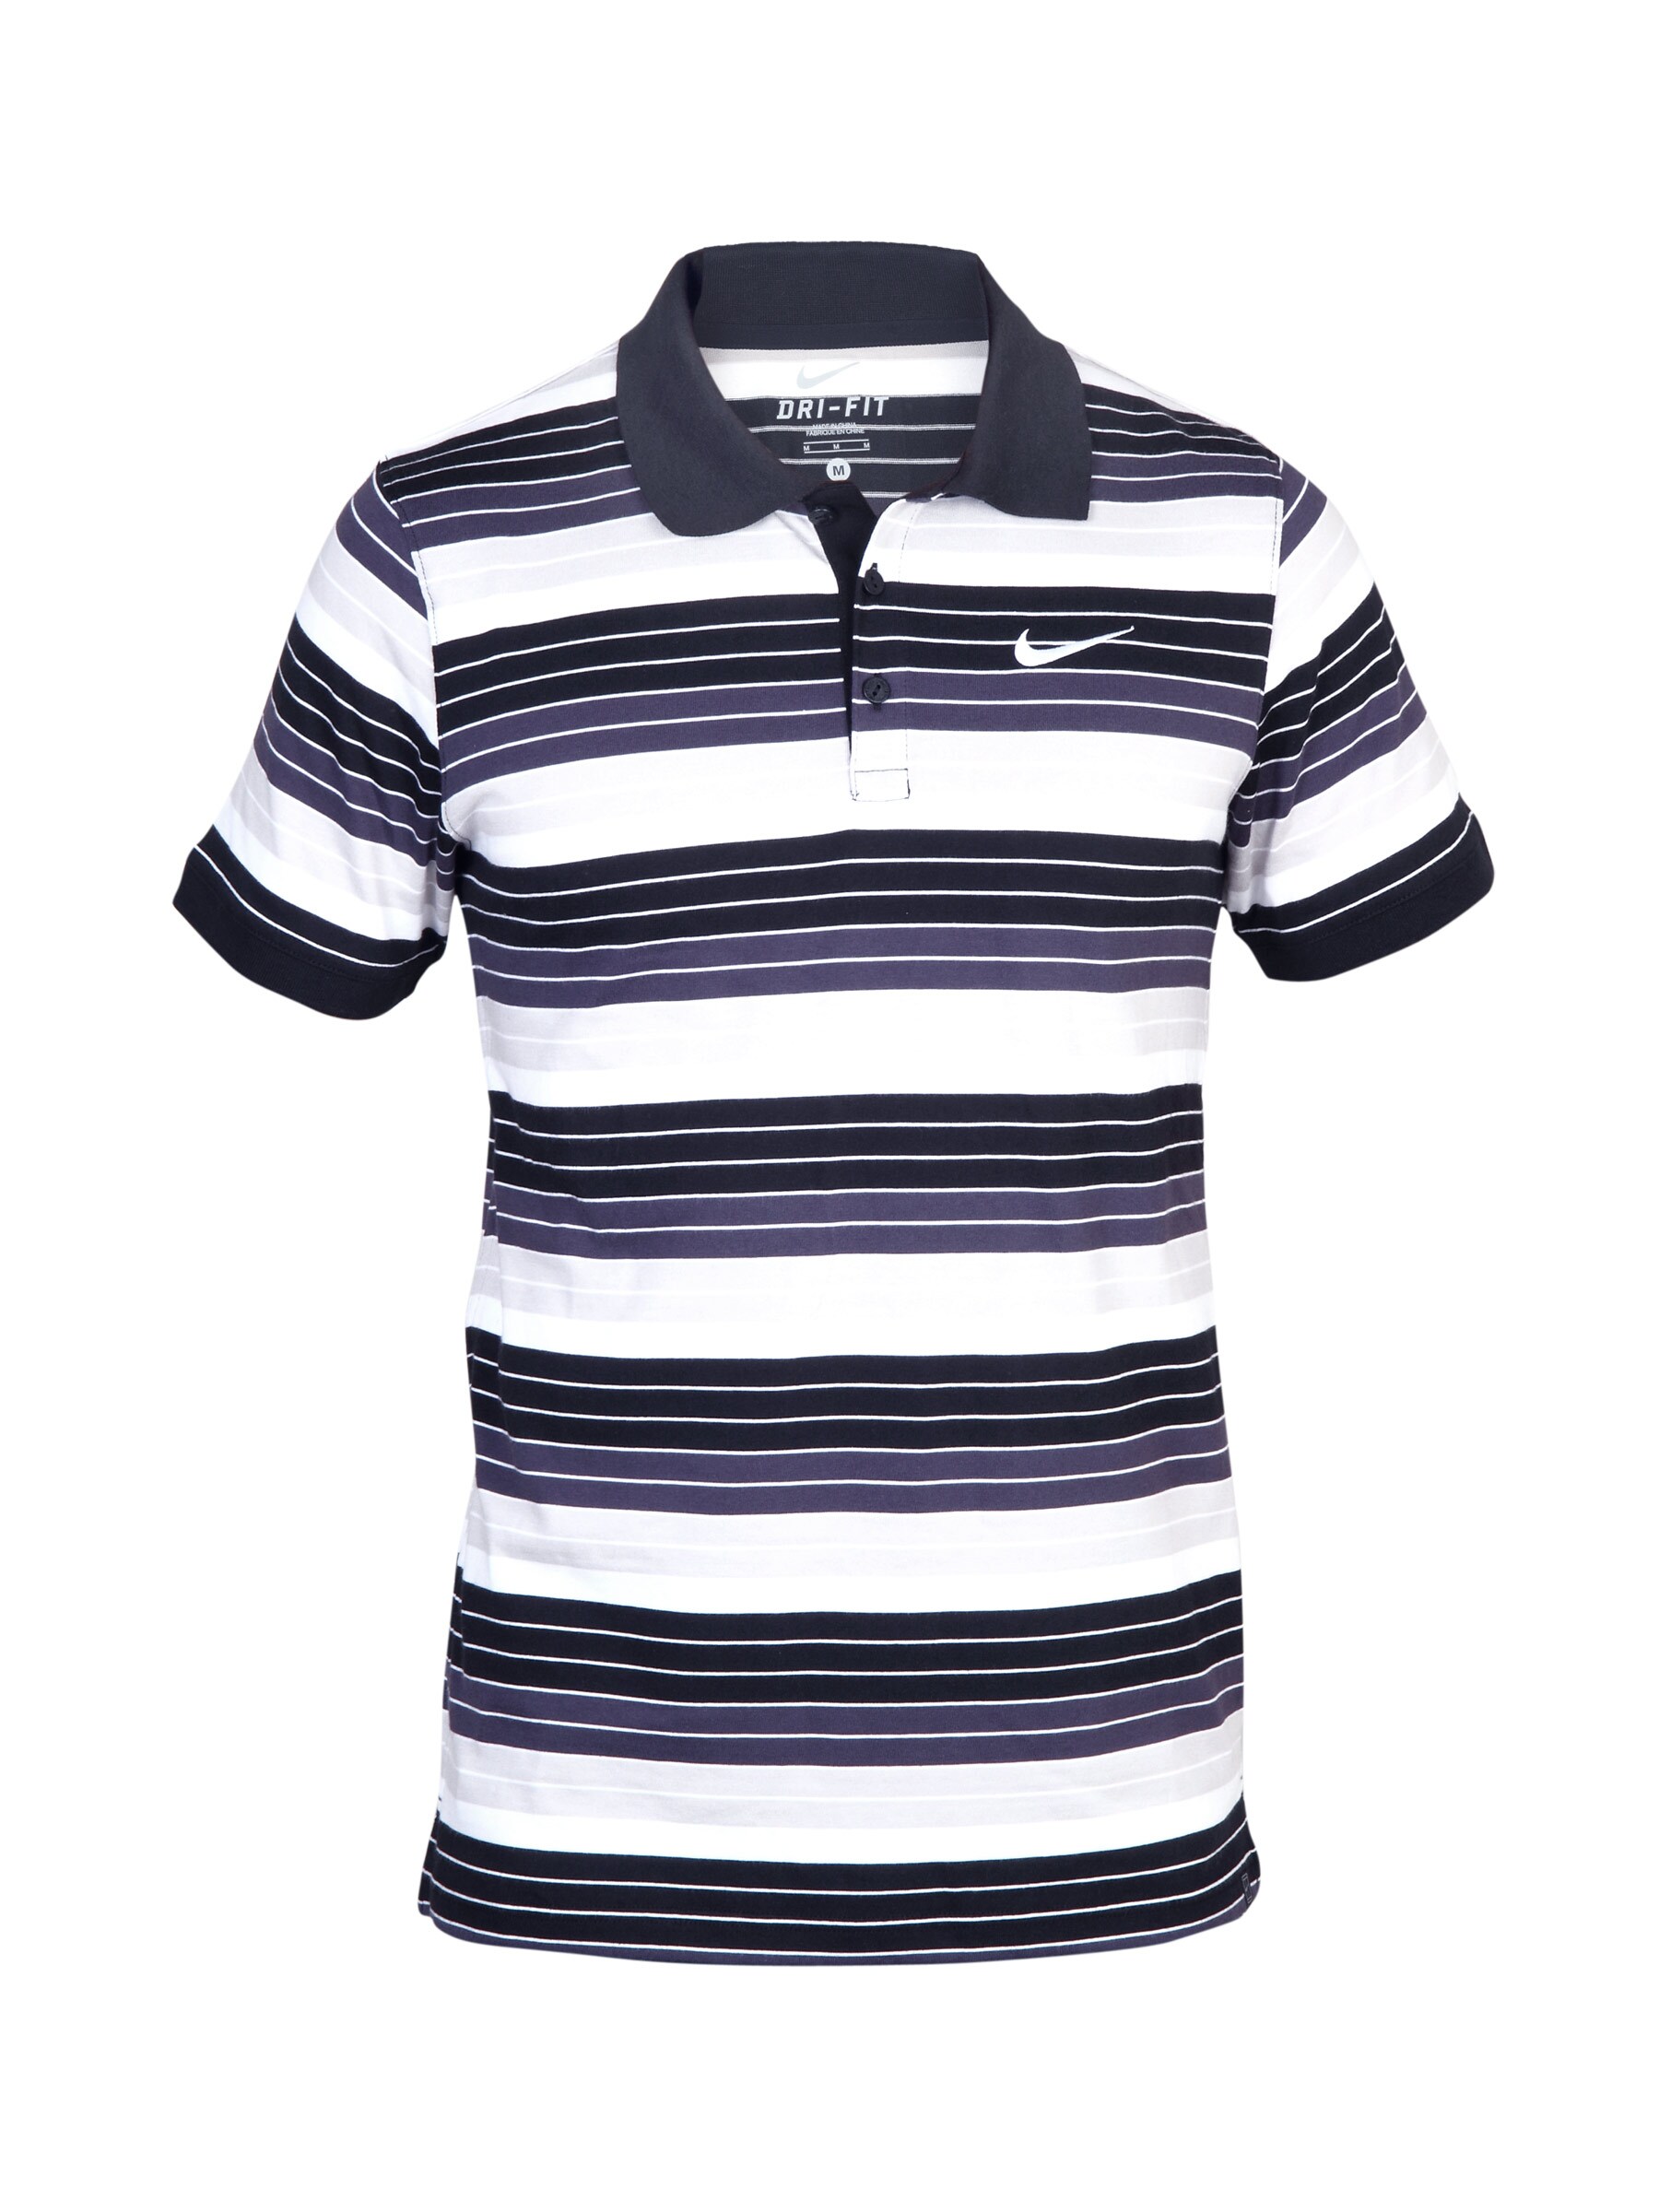 Nike Men's Black Polo T-shirt